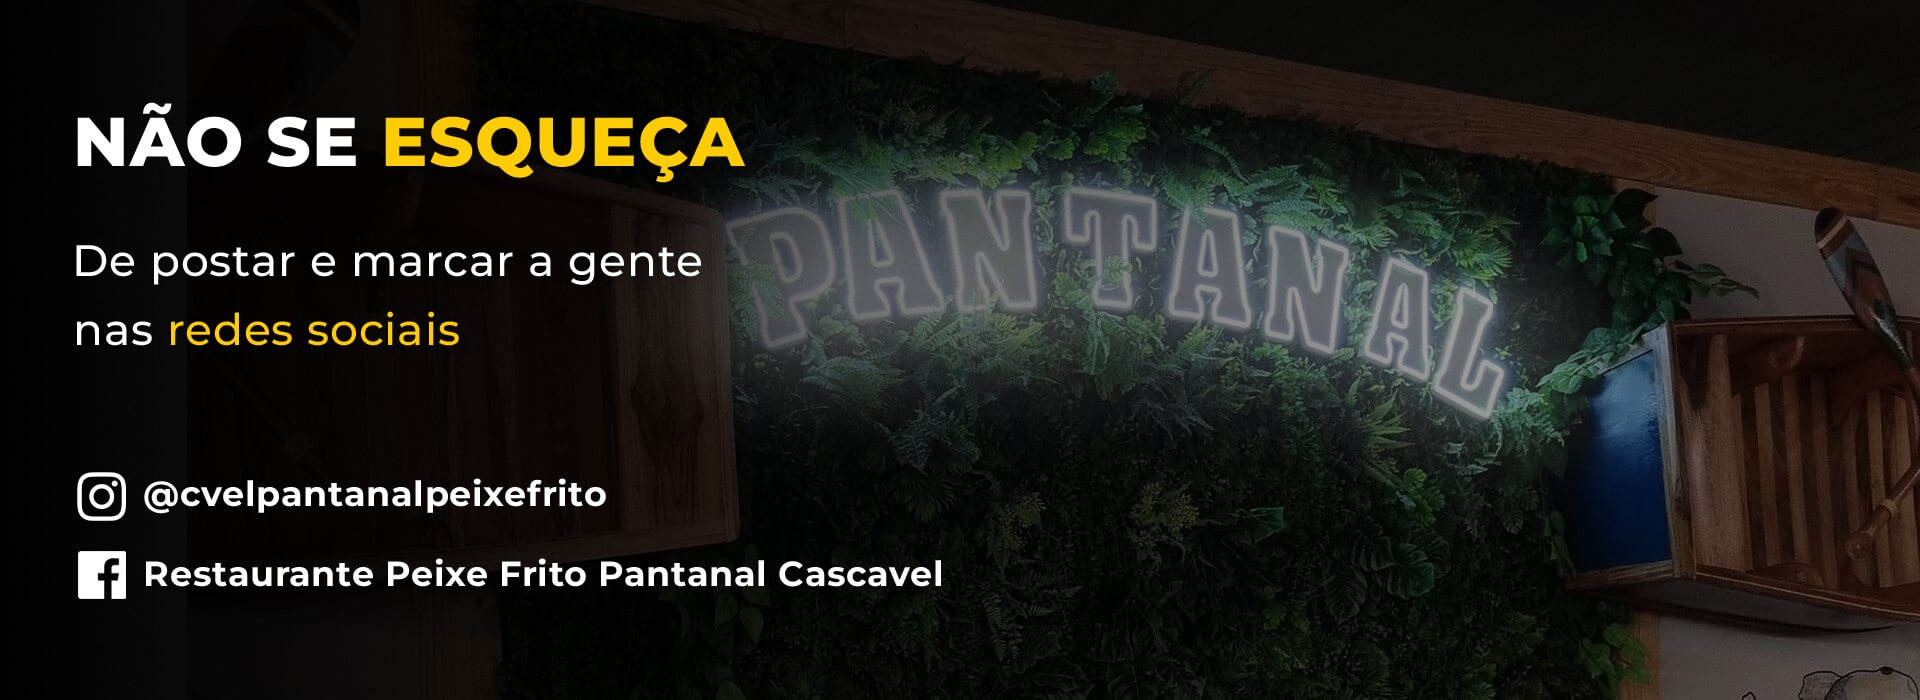 Banner Marque nas redes sociais - Peixe Frito Pantanal v2